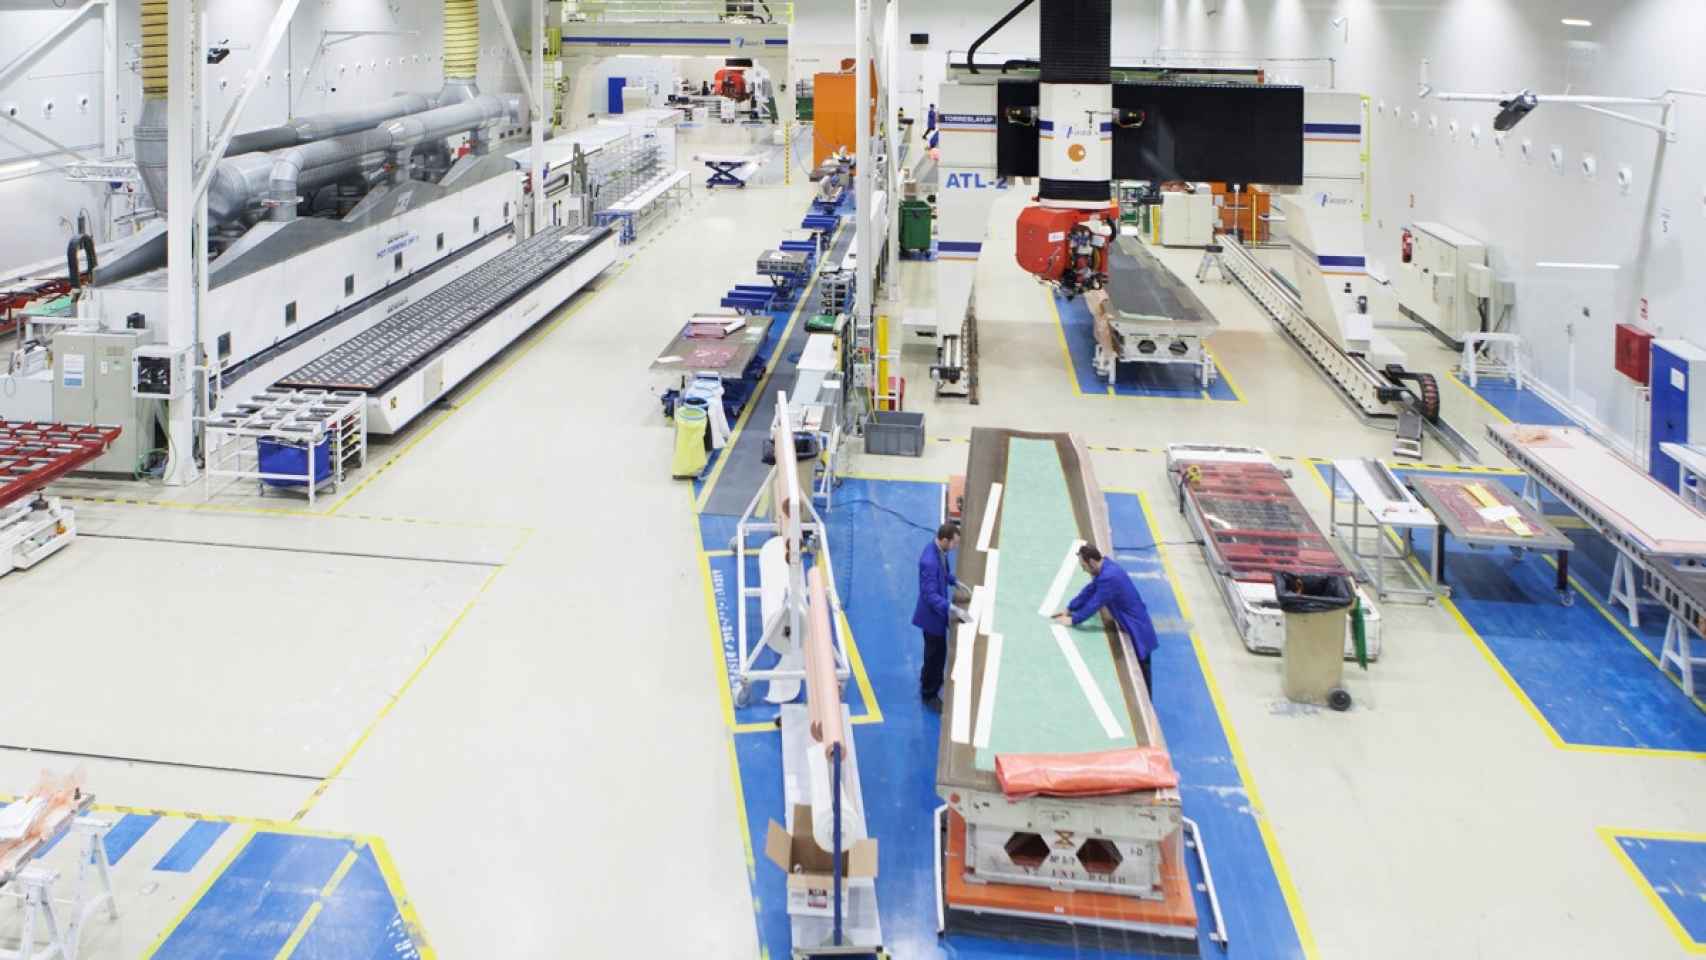 Interior de una de las fábricas de este Tier1 de aereonáutica, que da empleo a más de 700 personas en Castilla y León.